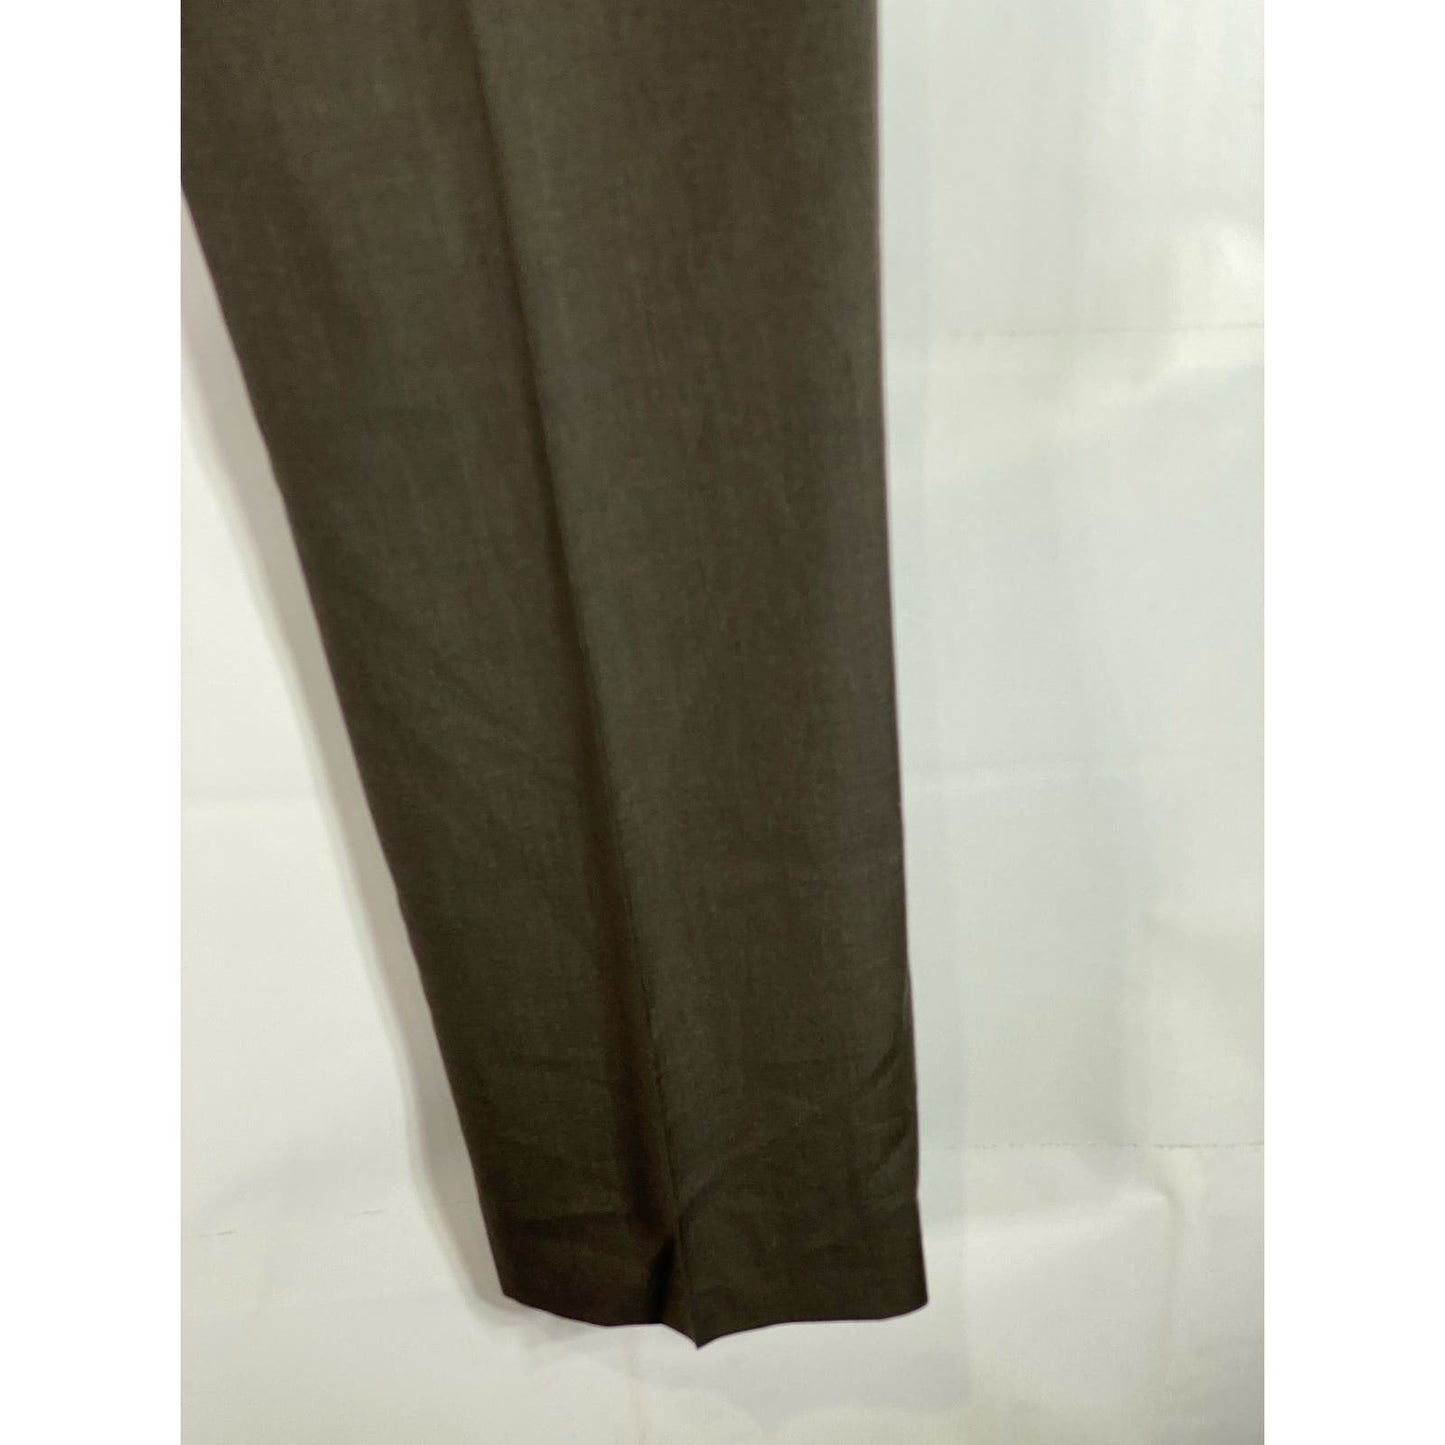 ERMENEGILDO ZEGNA Men's Brown Pleated Front Wool Suit Pants SZ 36